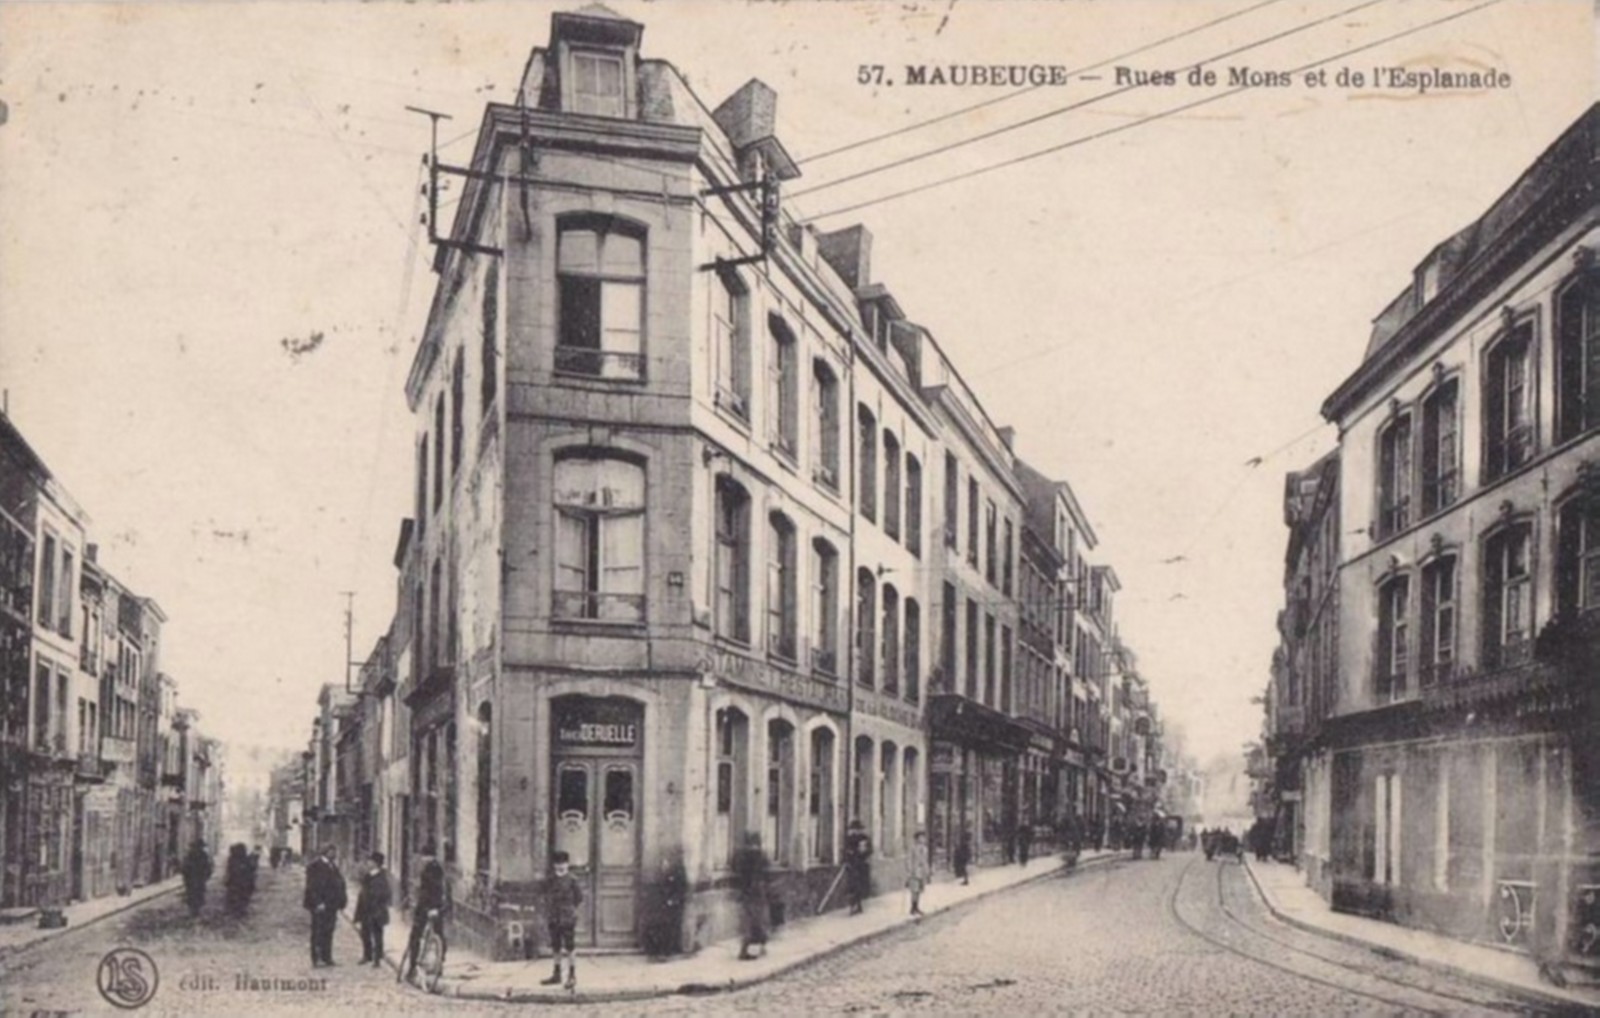 Maubeuge en carte postale, rue de Mons et de l'Esplanade